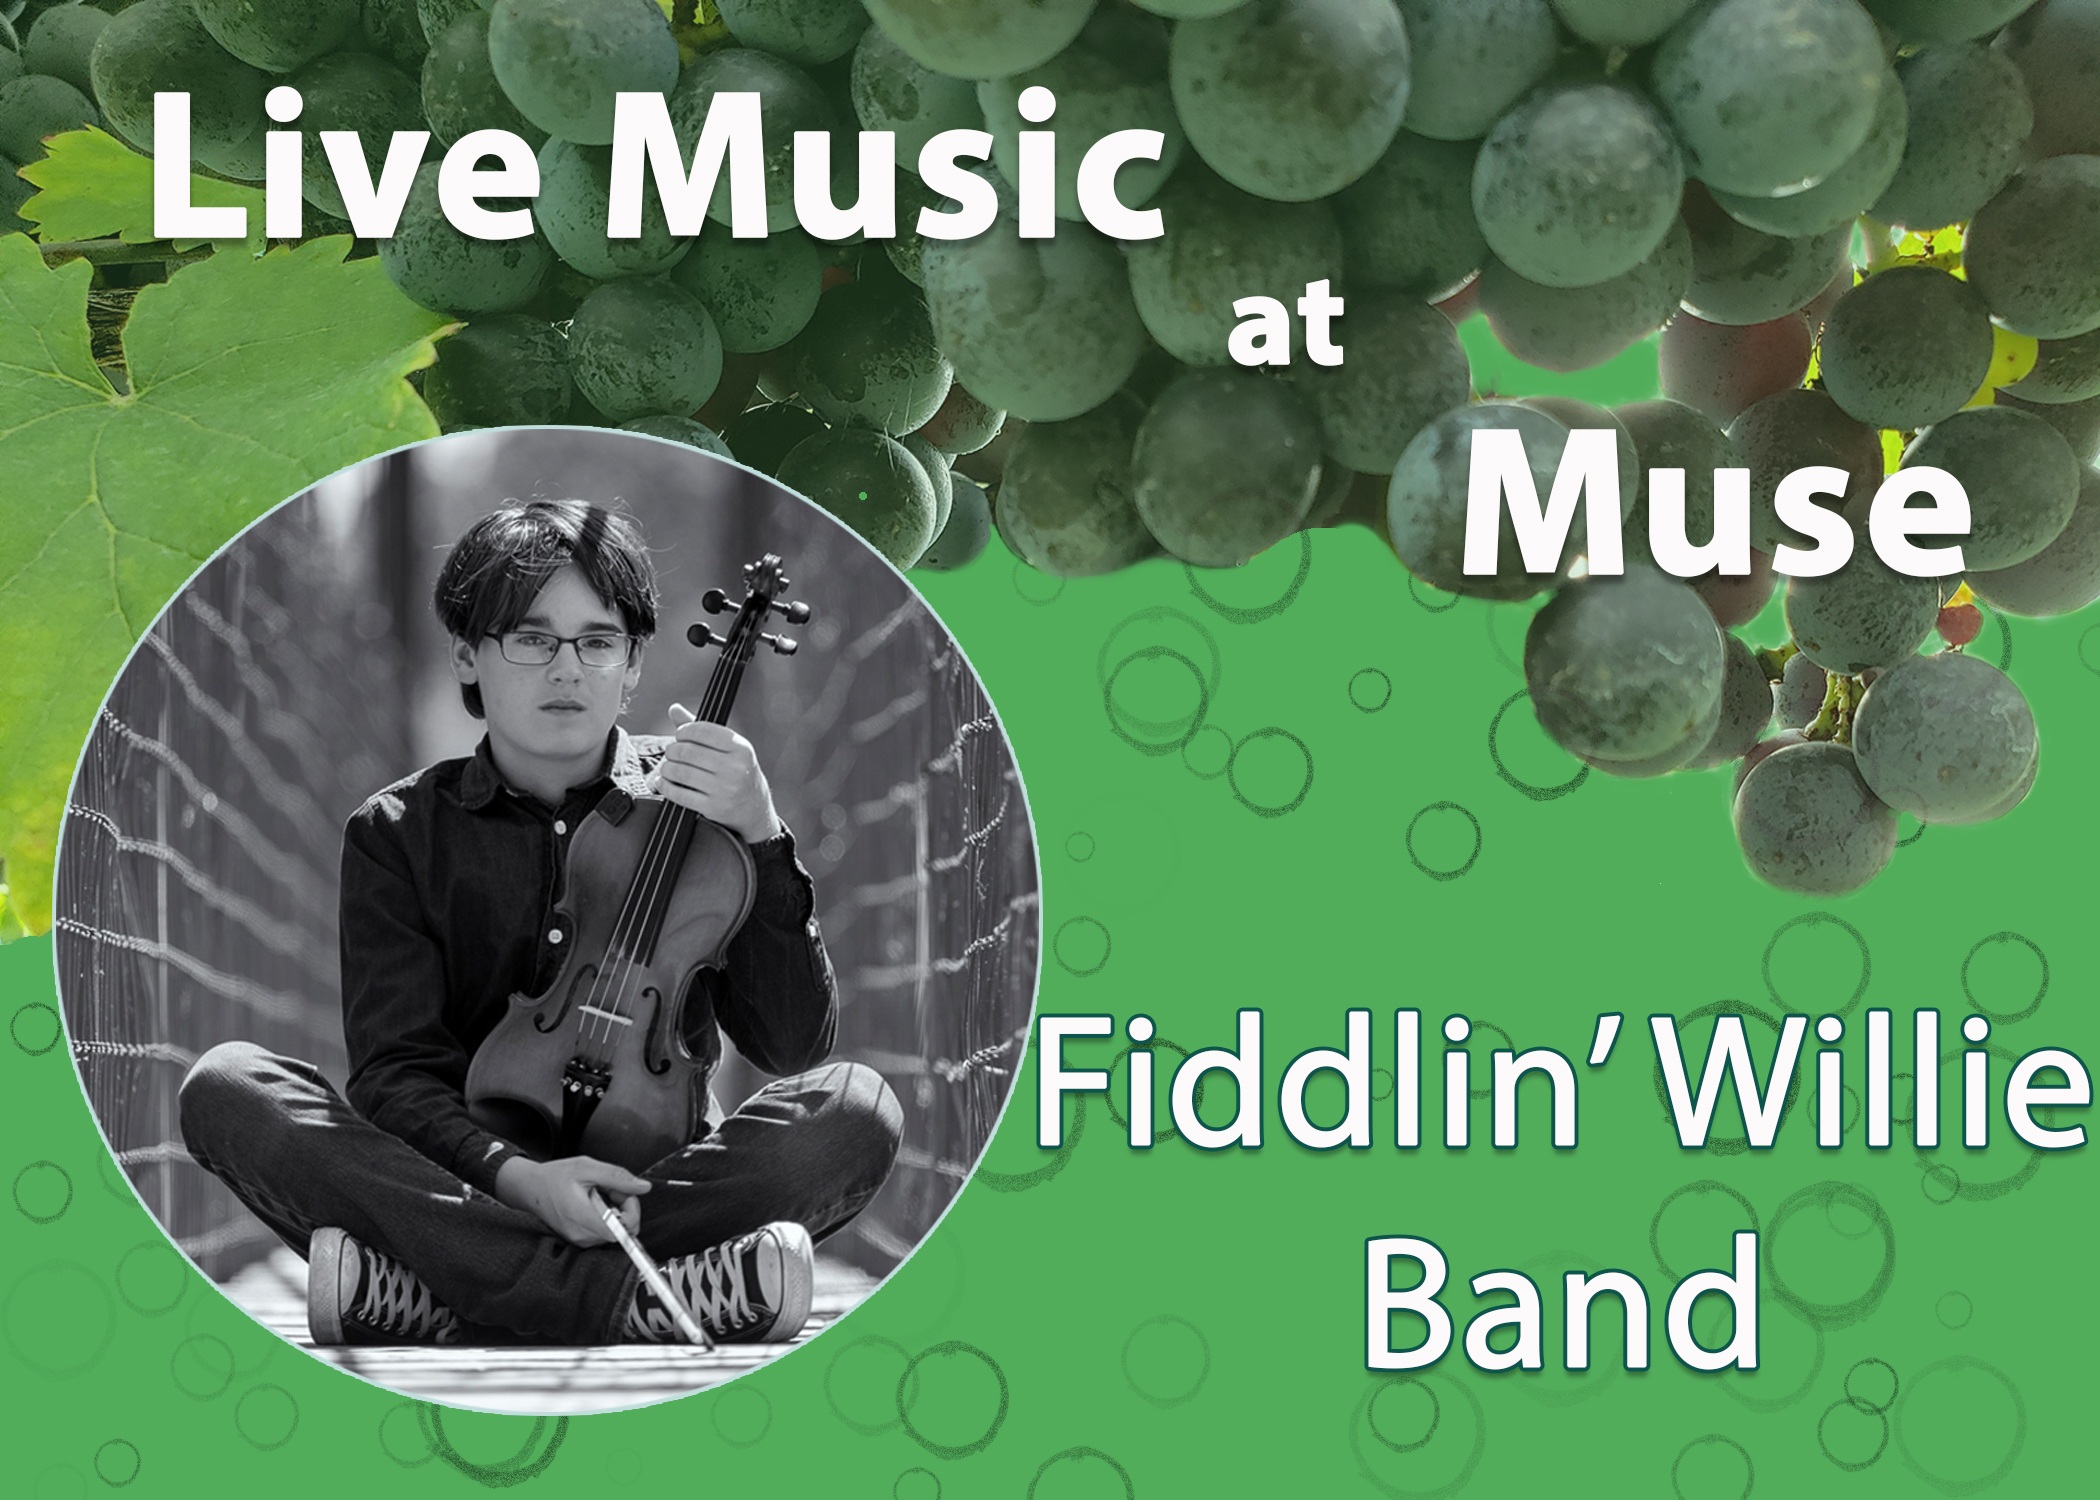 Fiddlin Willie Band